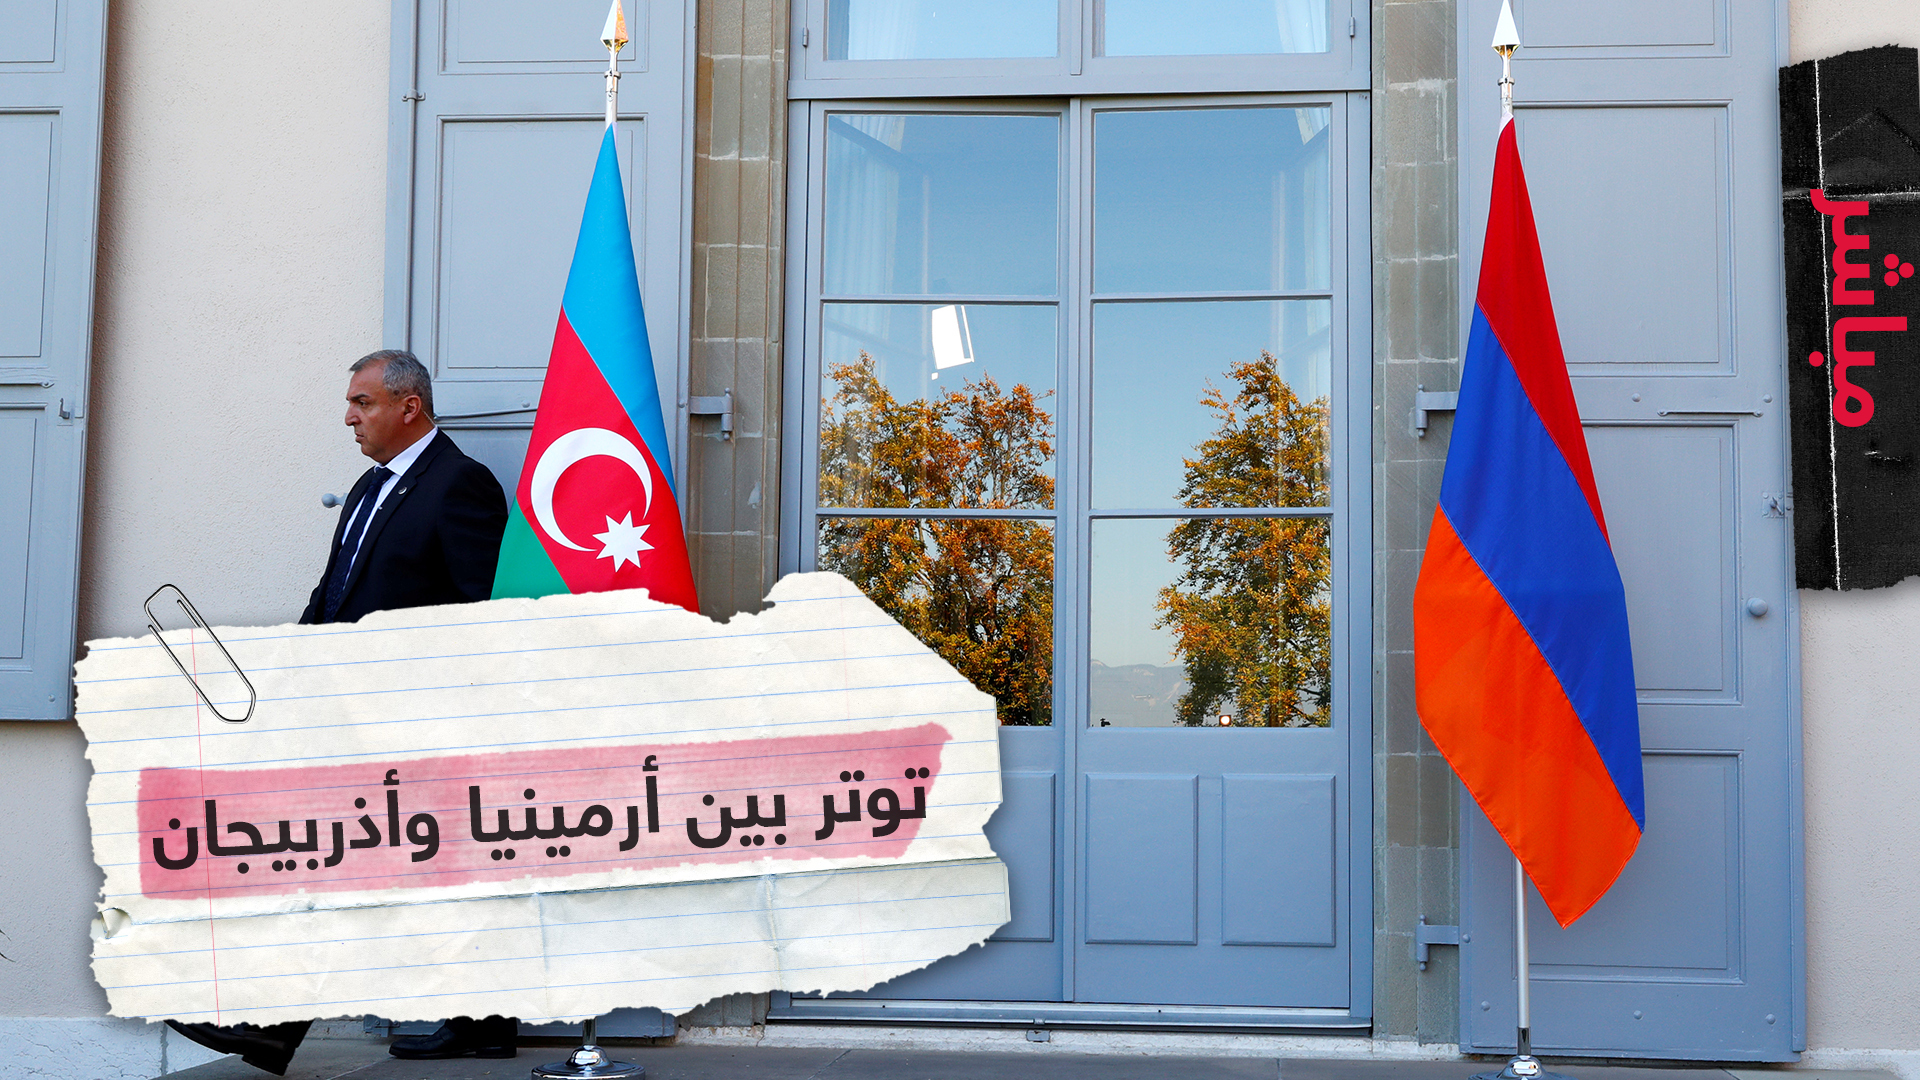 تجدد خلاف قديم بين أرمينيا وأذربيجان وتركيا تدخل على الخط بتهديد أرمينيا